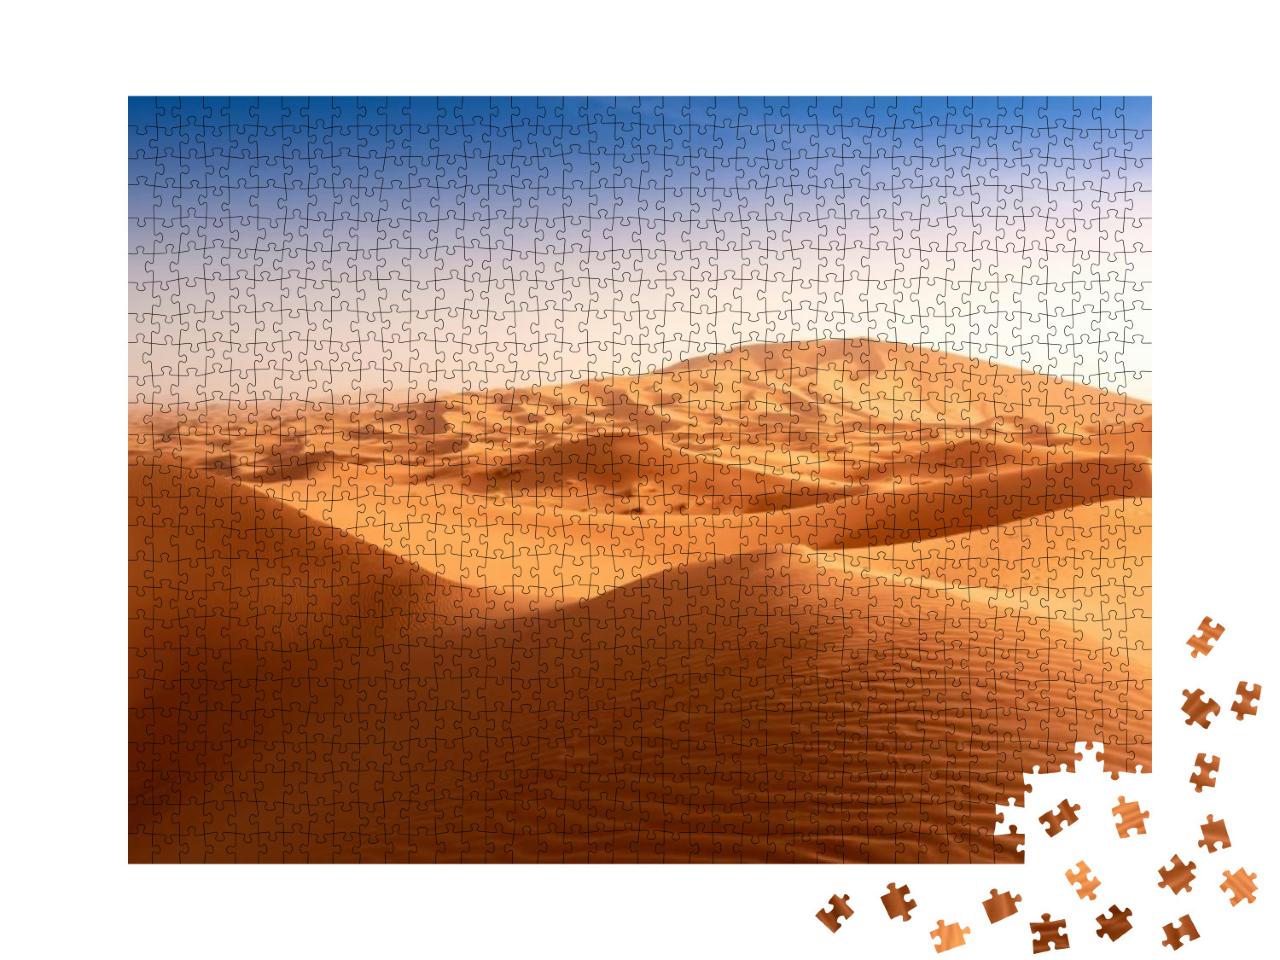 Puzzle 1000 Teile „Sanddünen in der Wüste Sahara in Marokko“